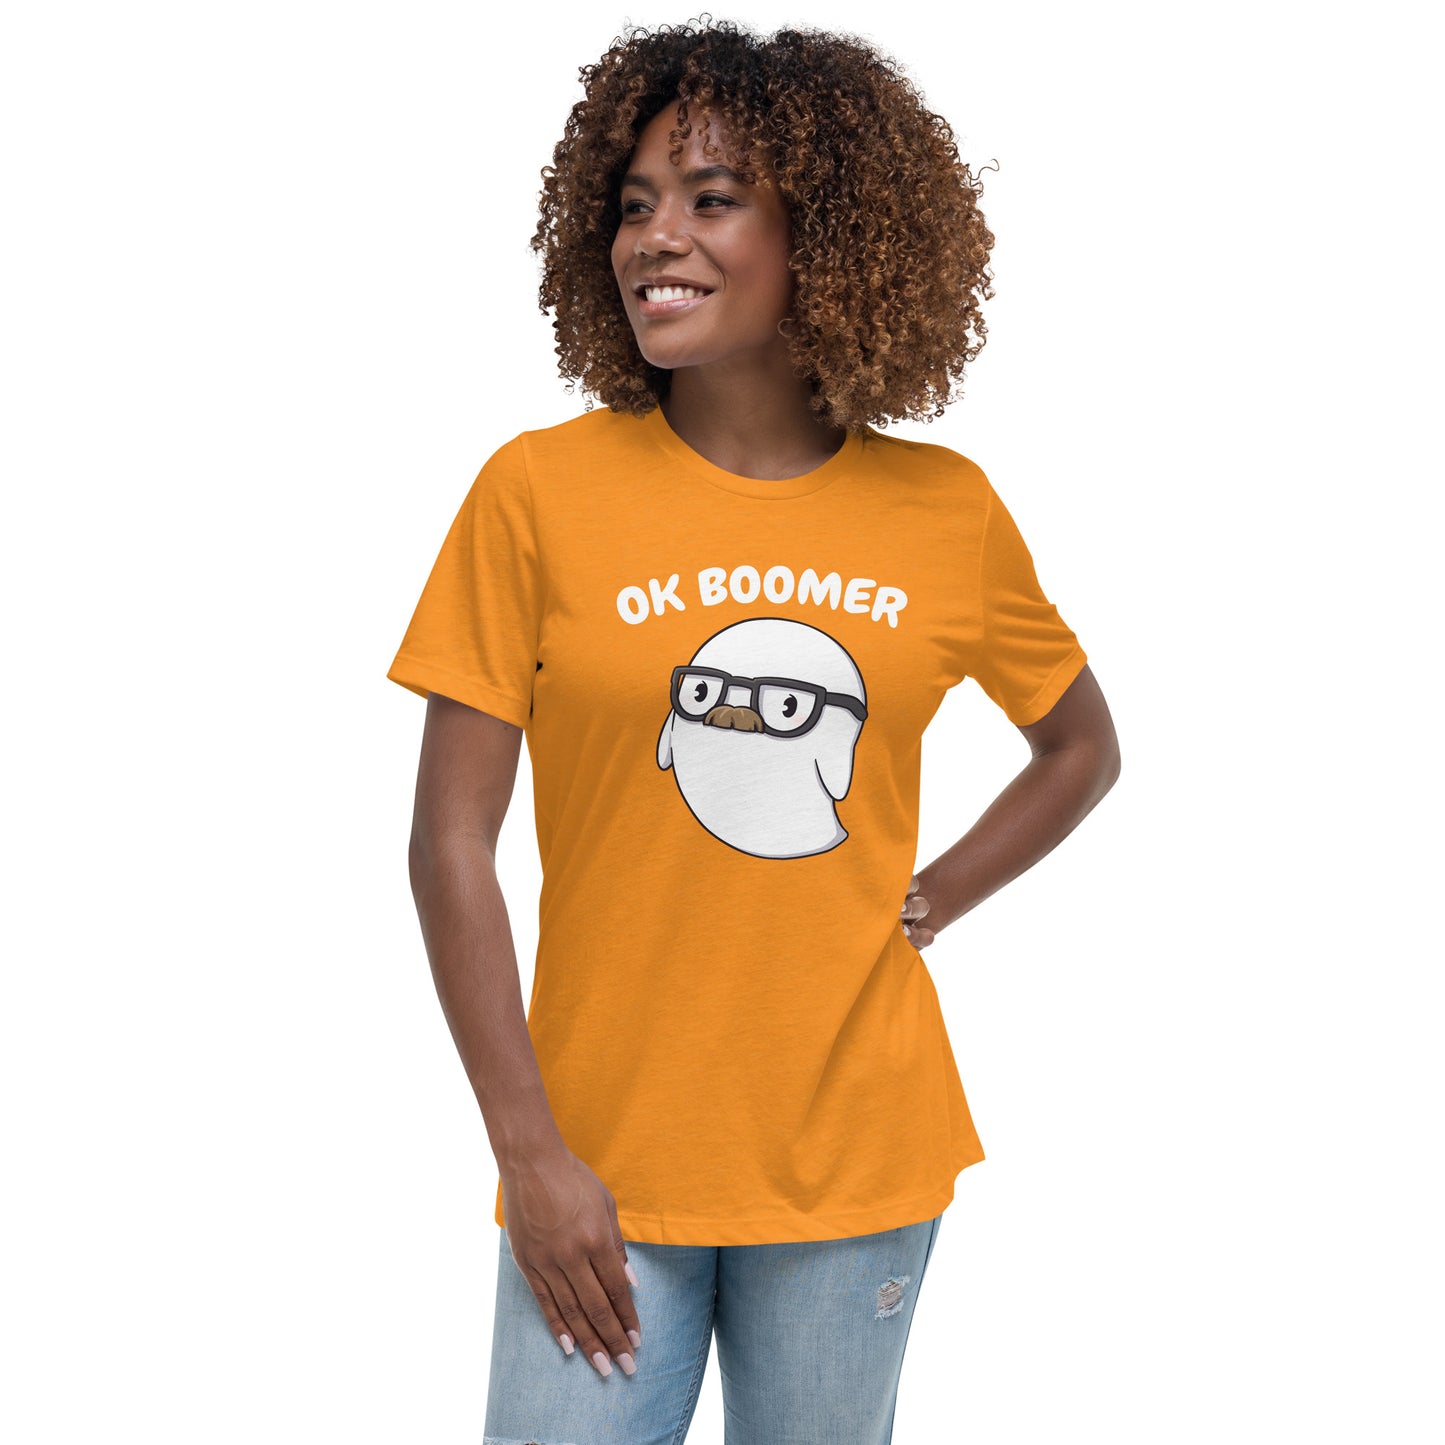 Ok Boomer - Women's Relaxed T-Shirt